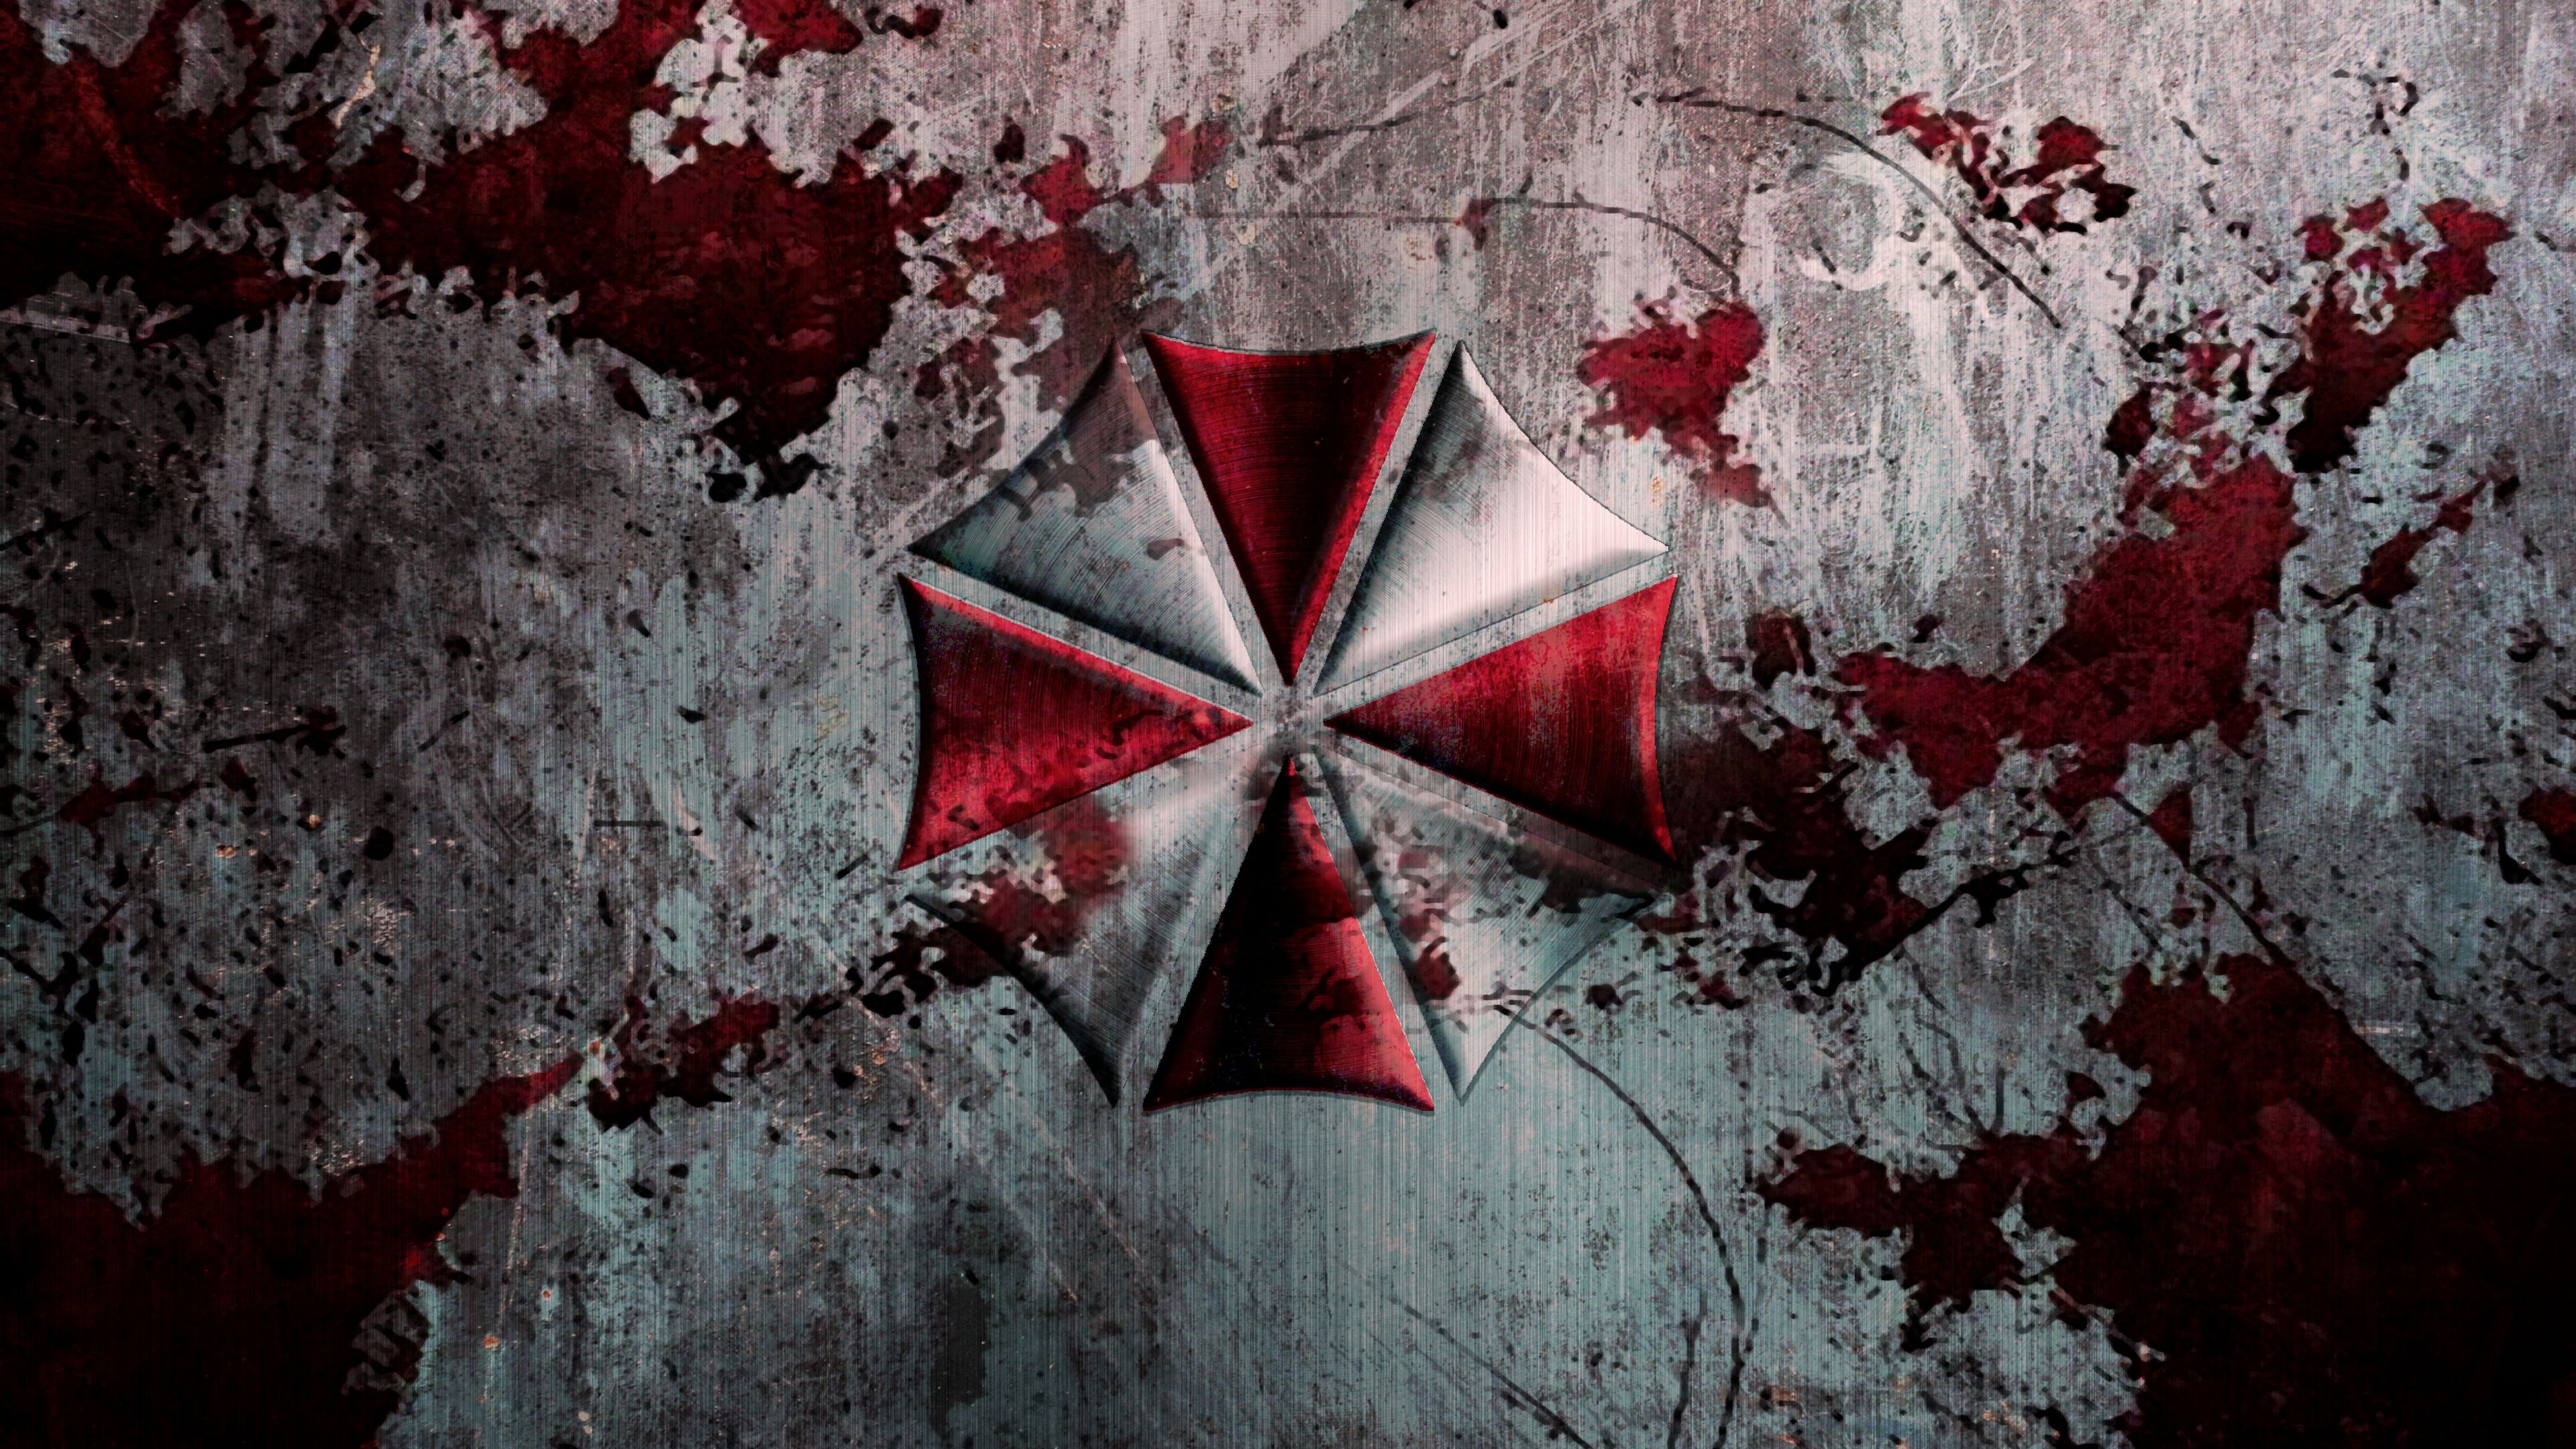 Resident Evil HD Wallpaper. Resident evil movie